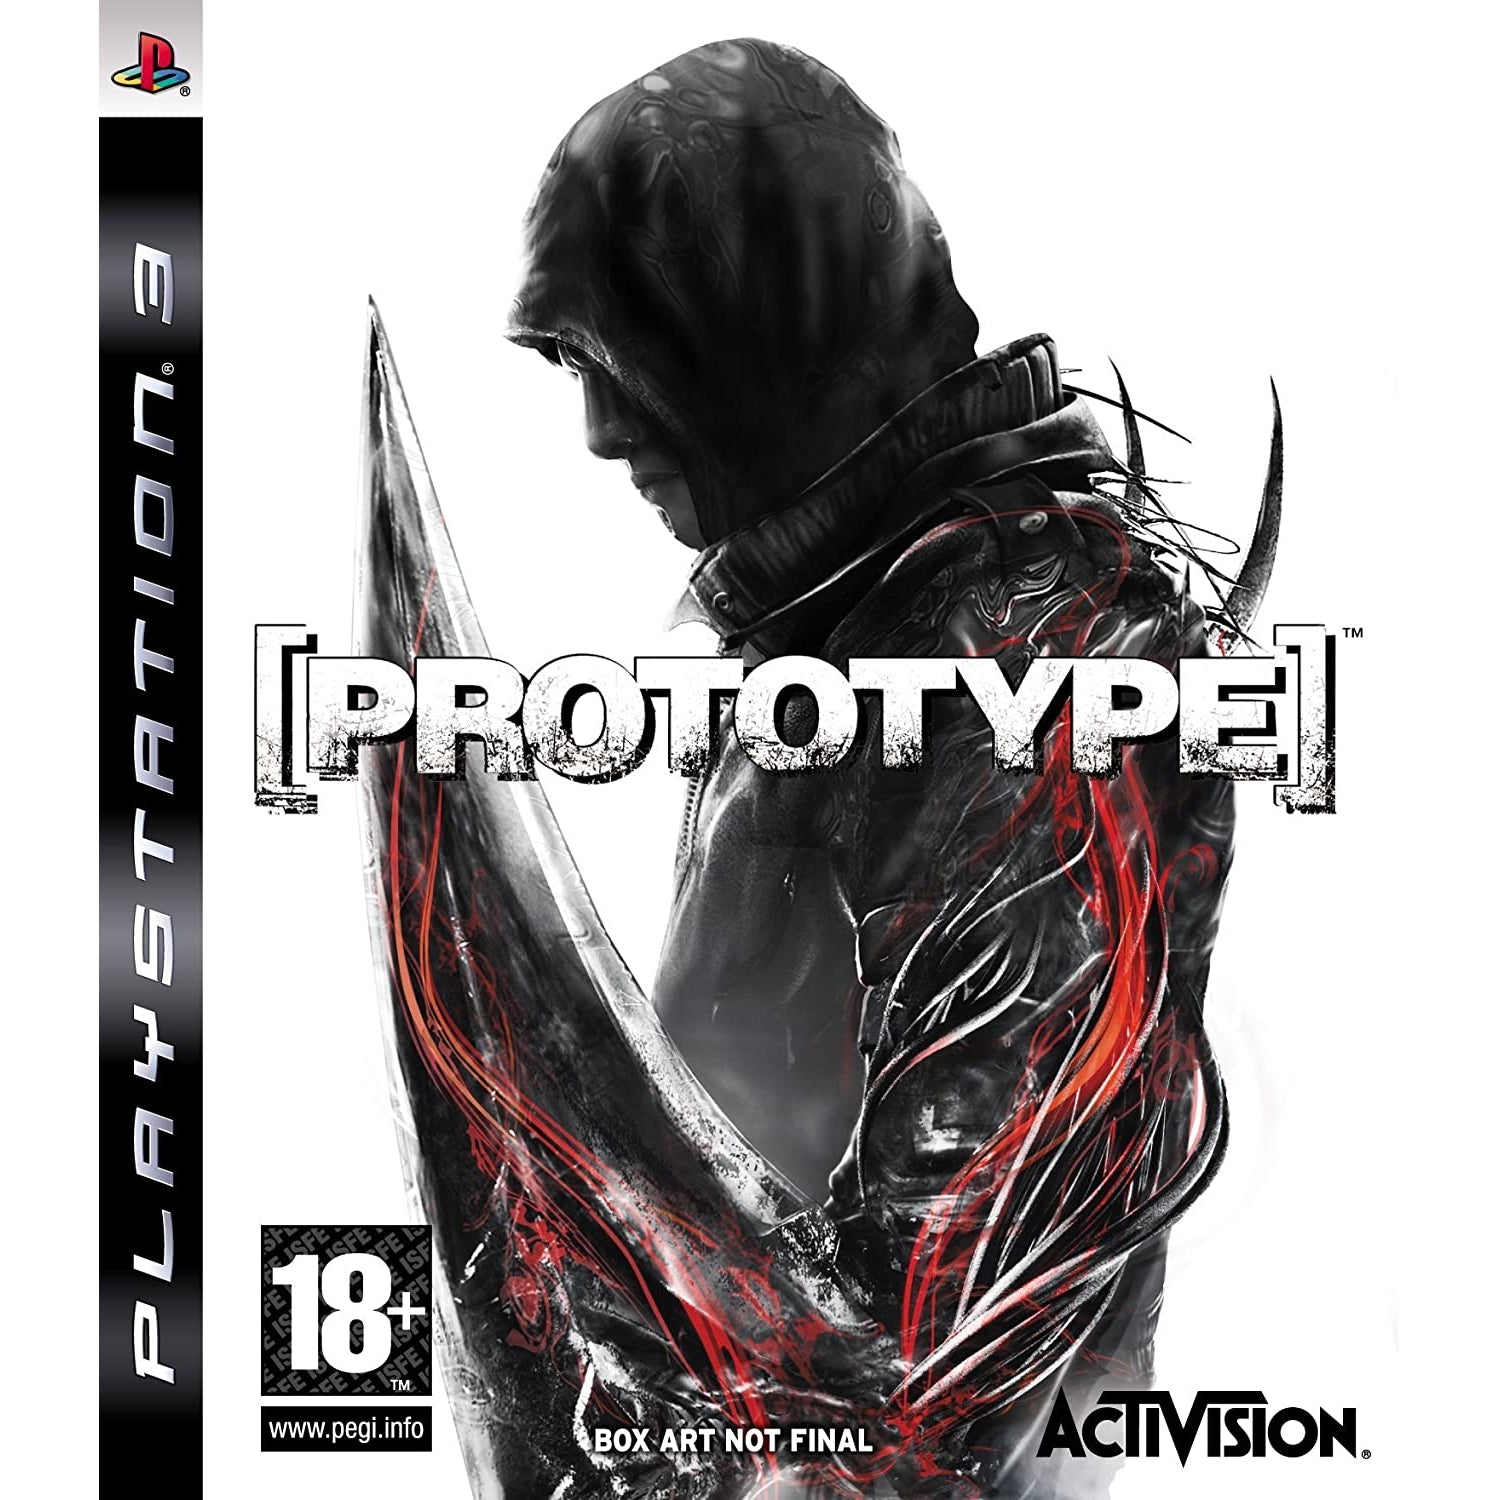 Prototype (PS3)